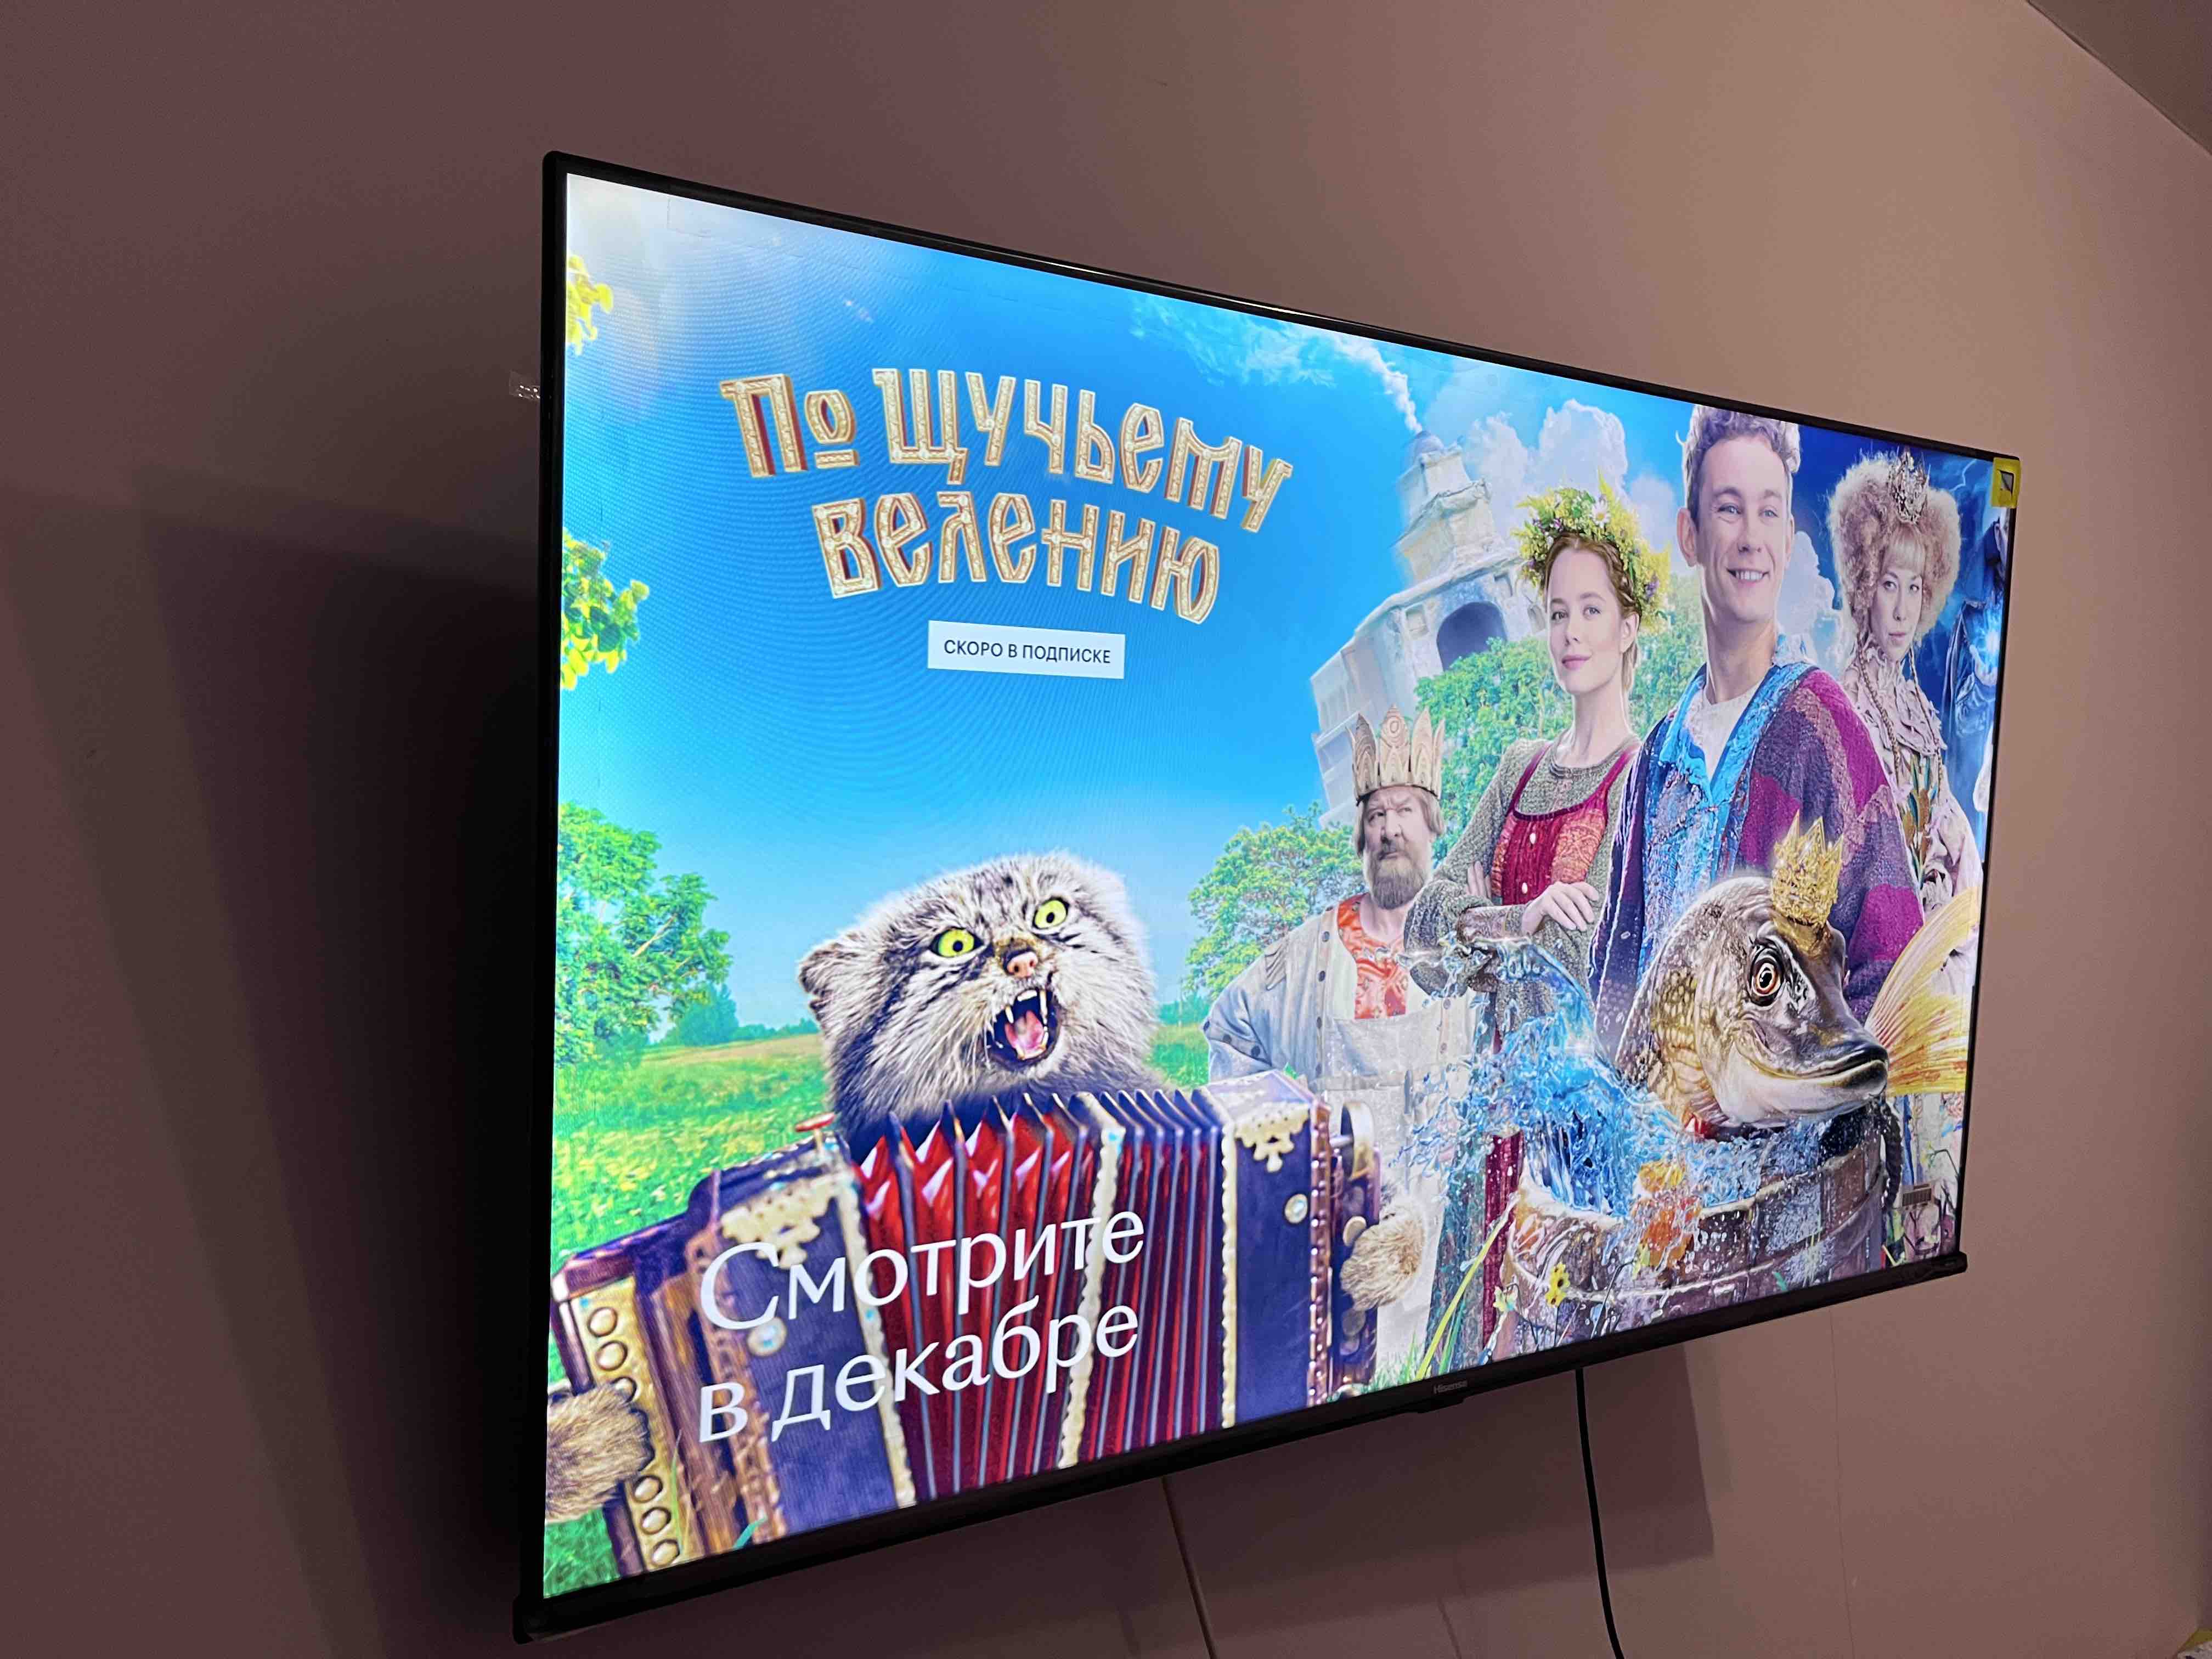 Телевизор Hisense 43A6K - купить в Минске по выгодной цене в  интернет-магазине